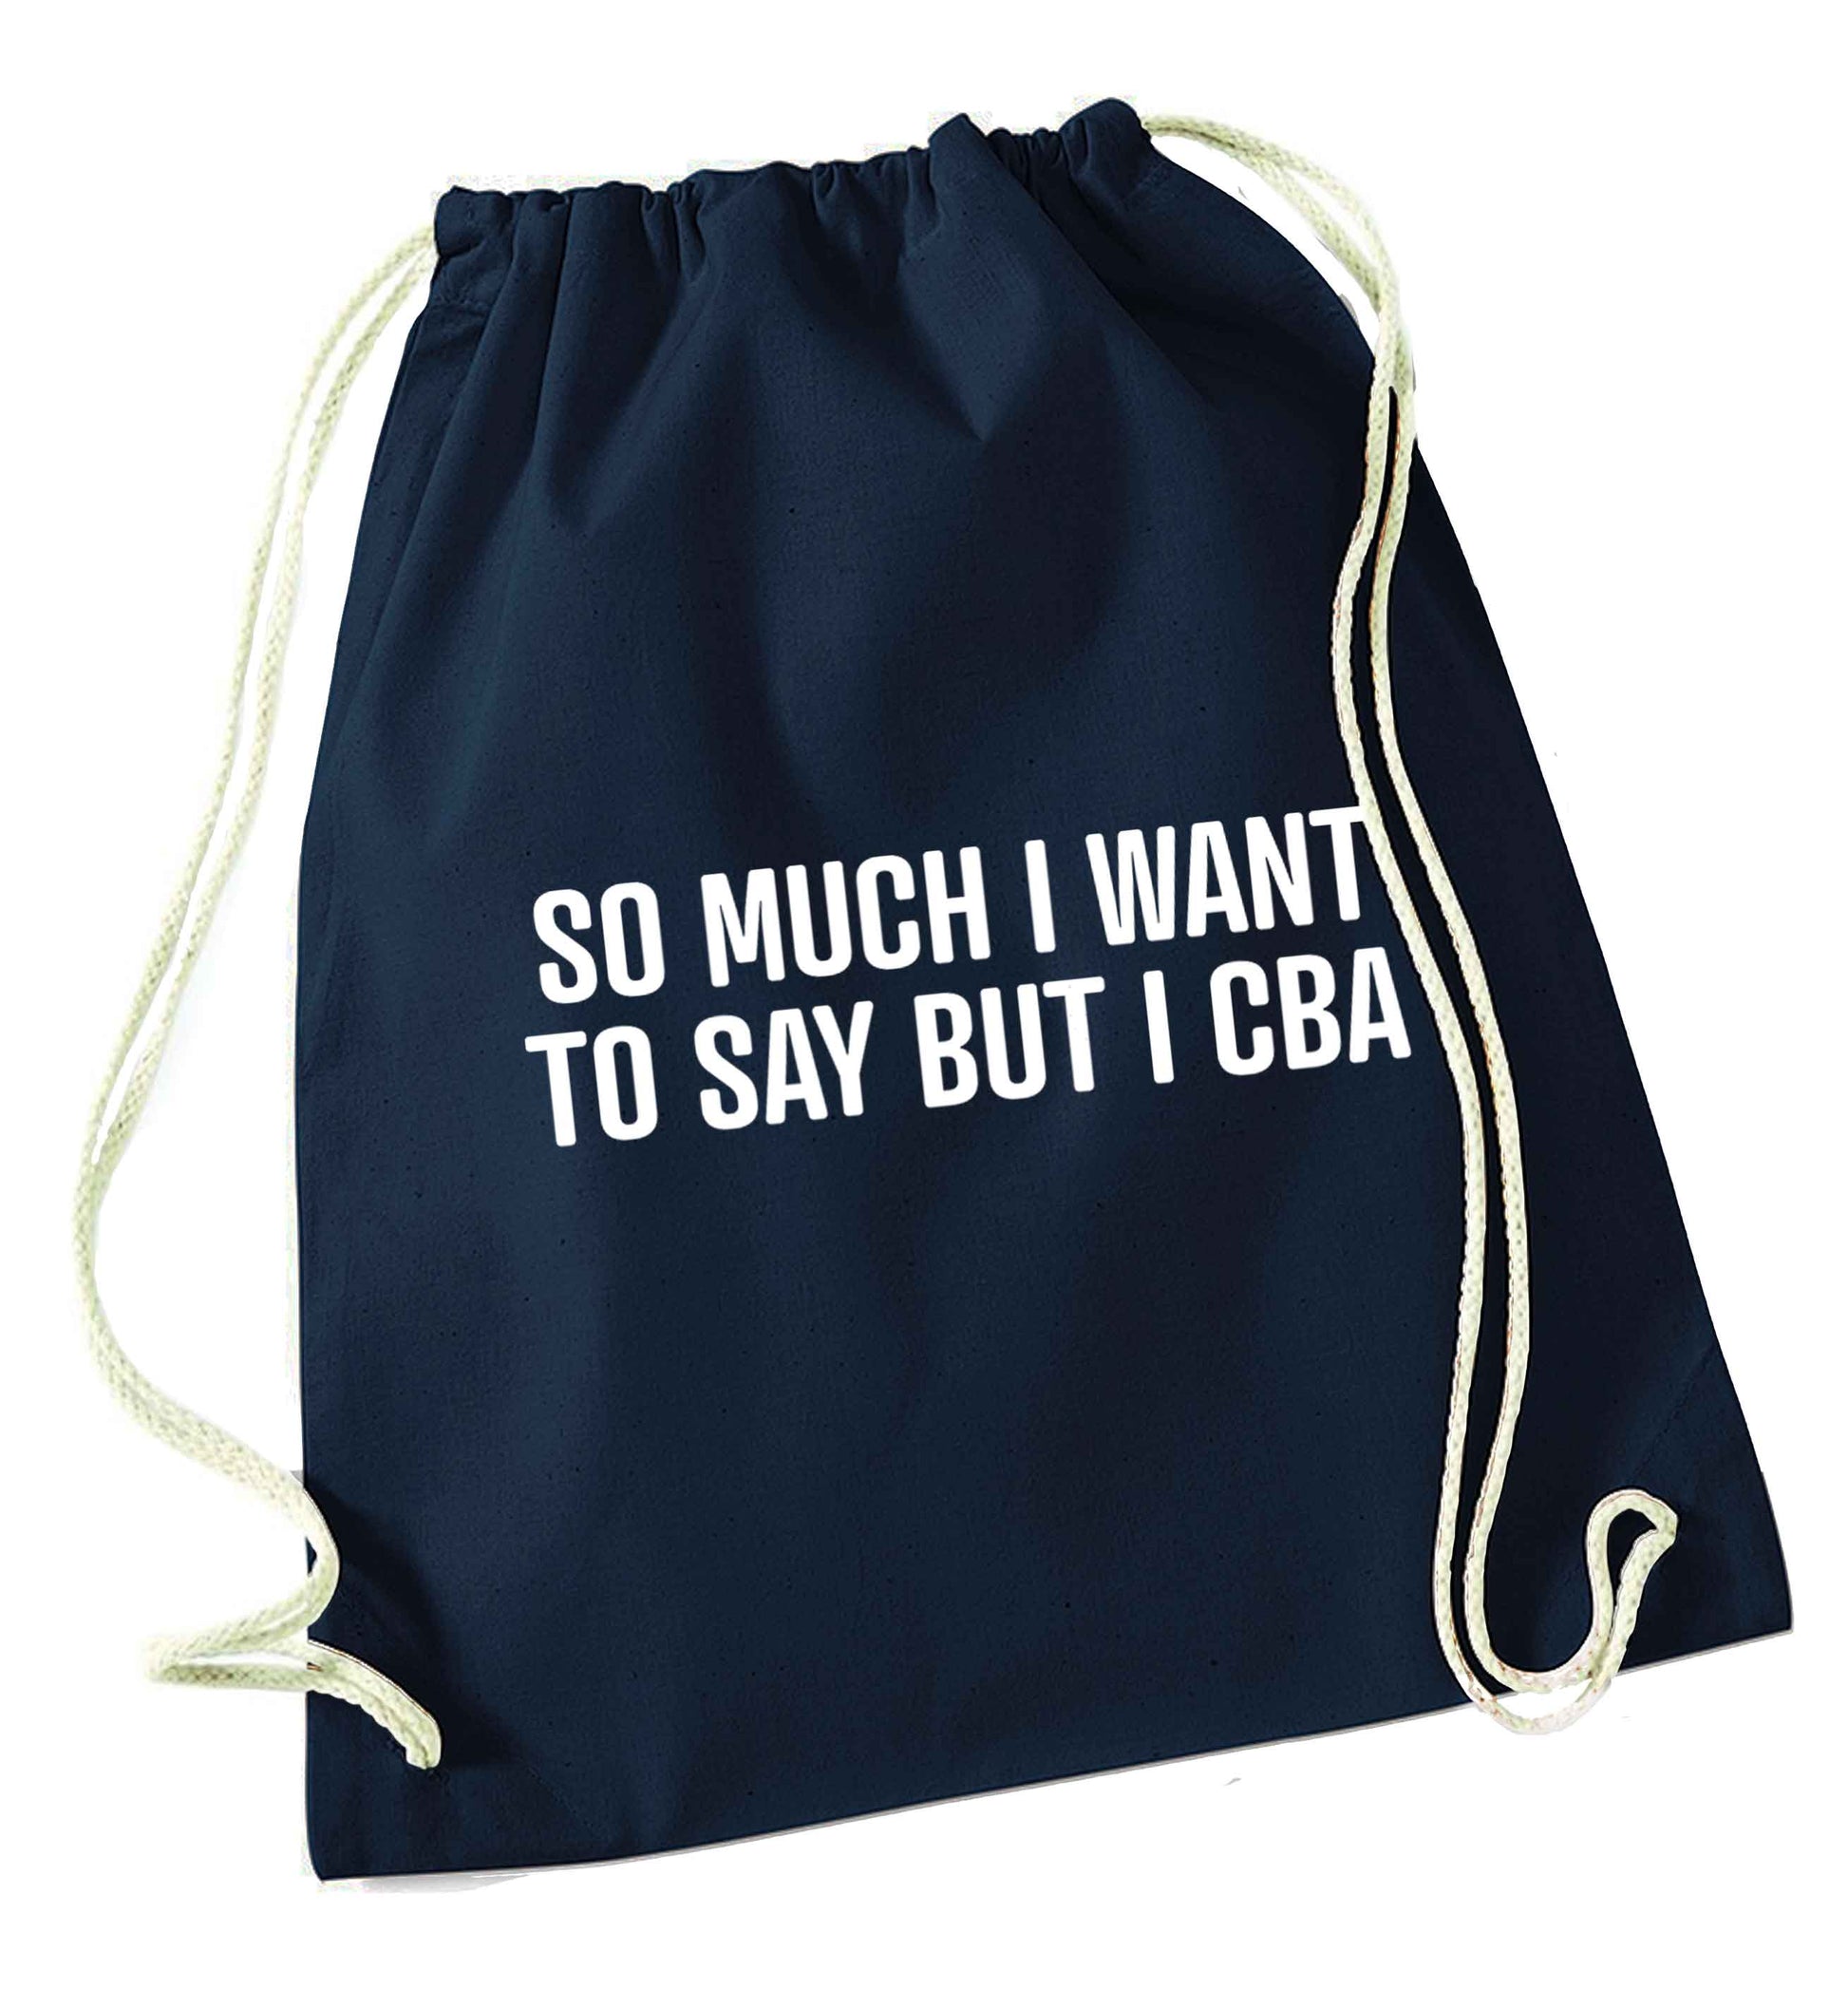 So much I want to say I cba  navy drawstring bag